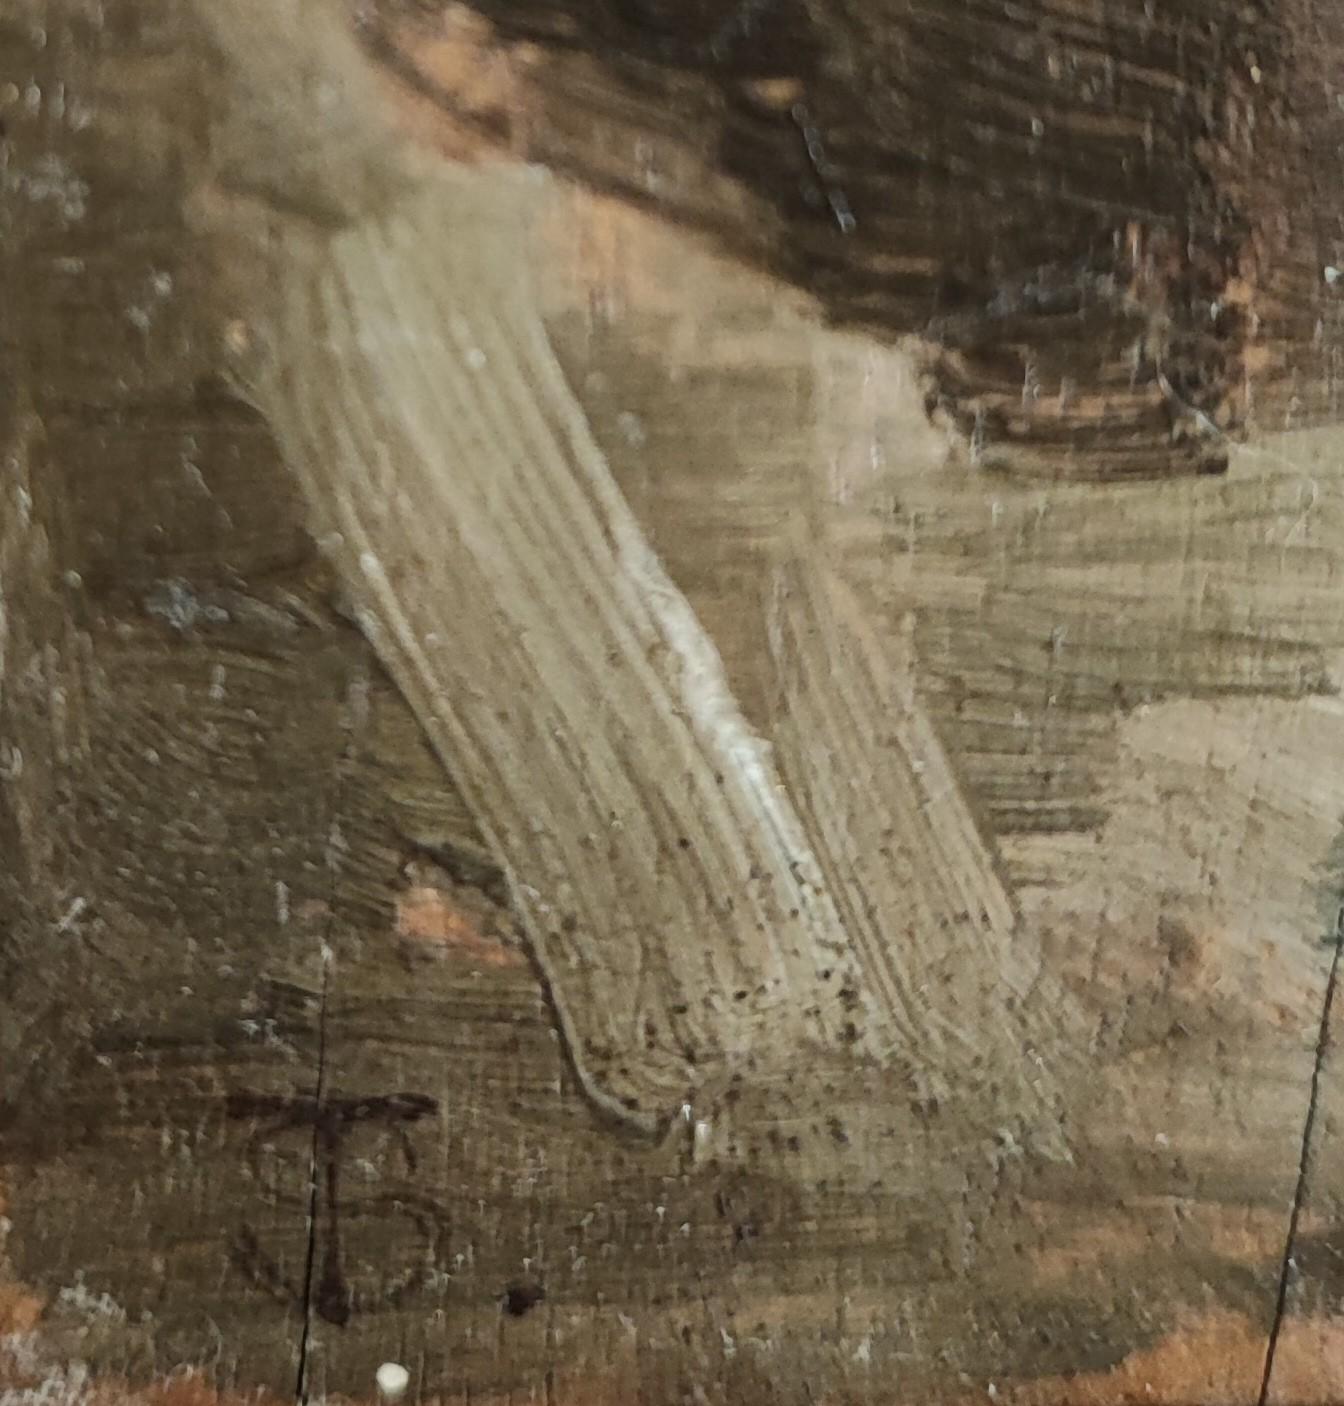 Monogrammierte Arbeit TS

Arbeiten auf Holz
Holzrahmen und vergoldeter Putz
41.5 x 29.5 x 4 cm